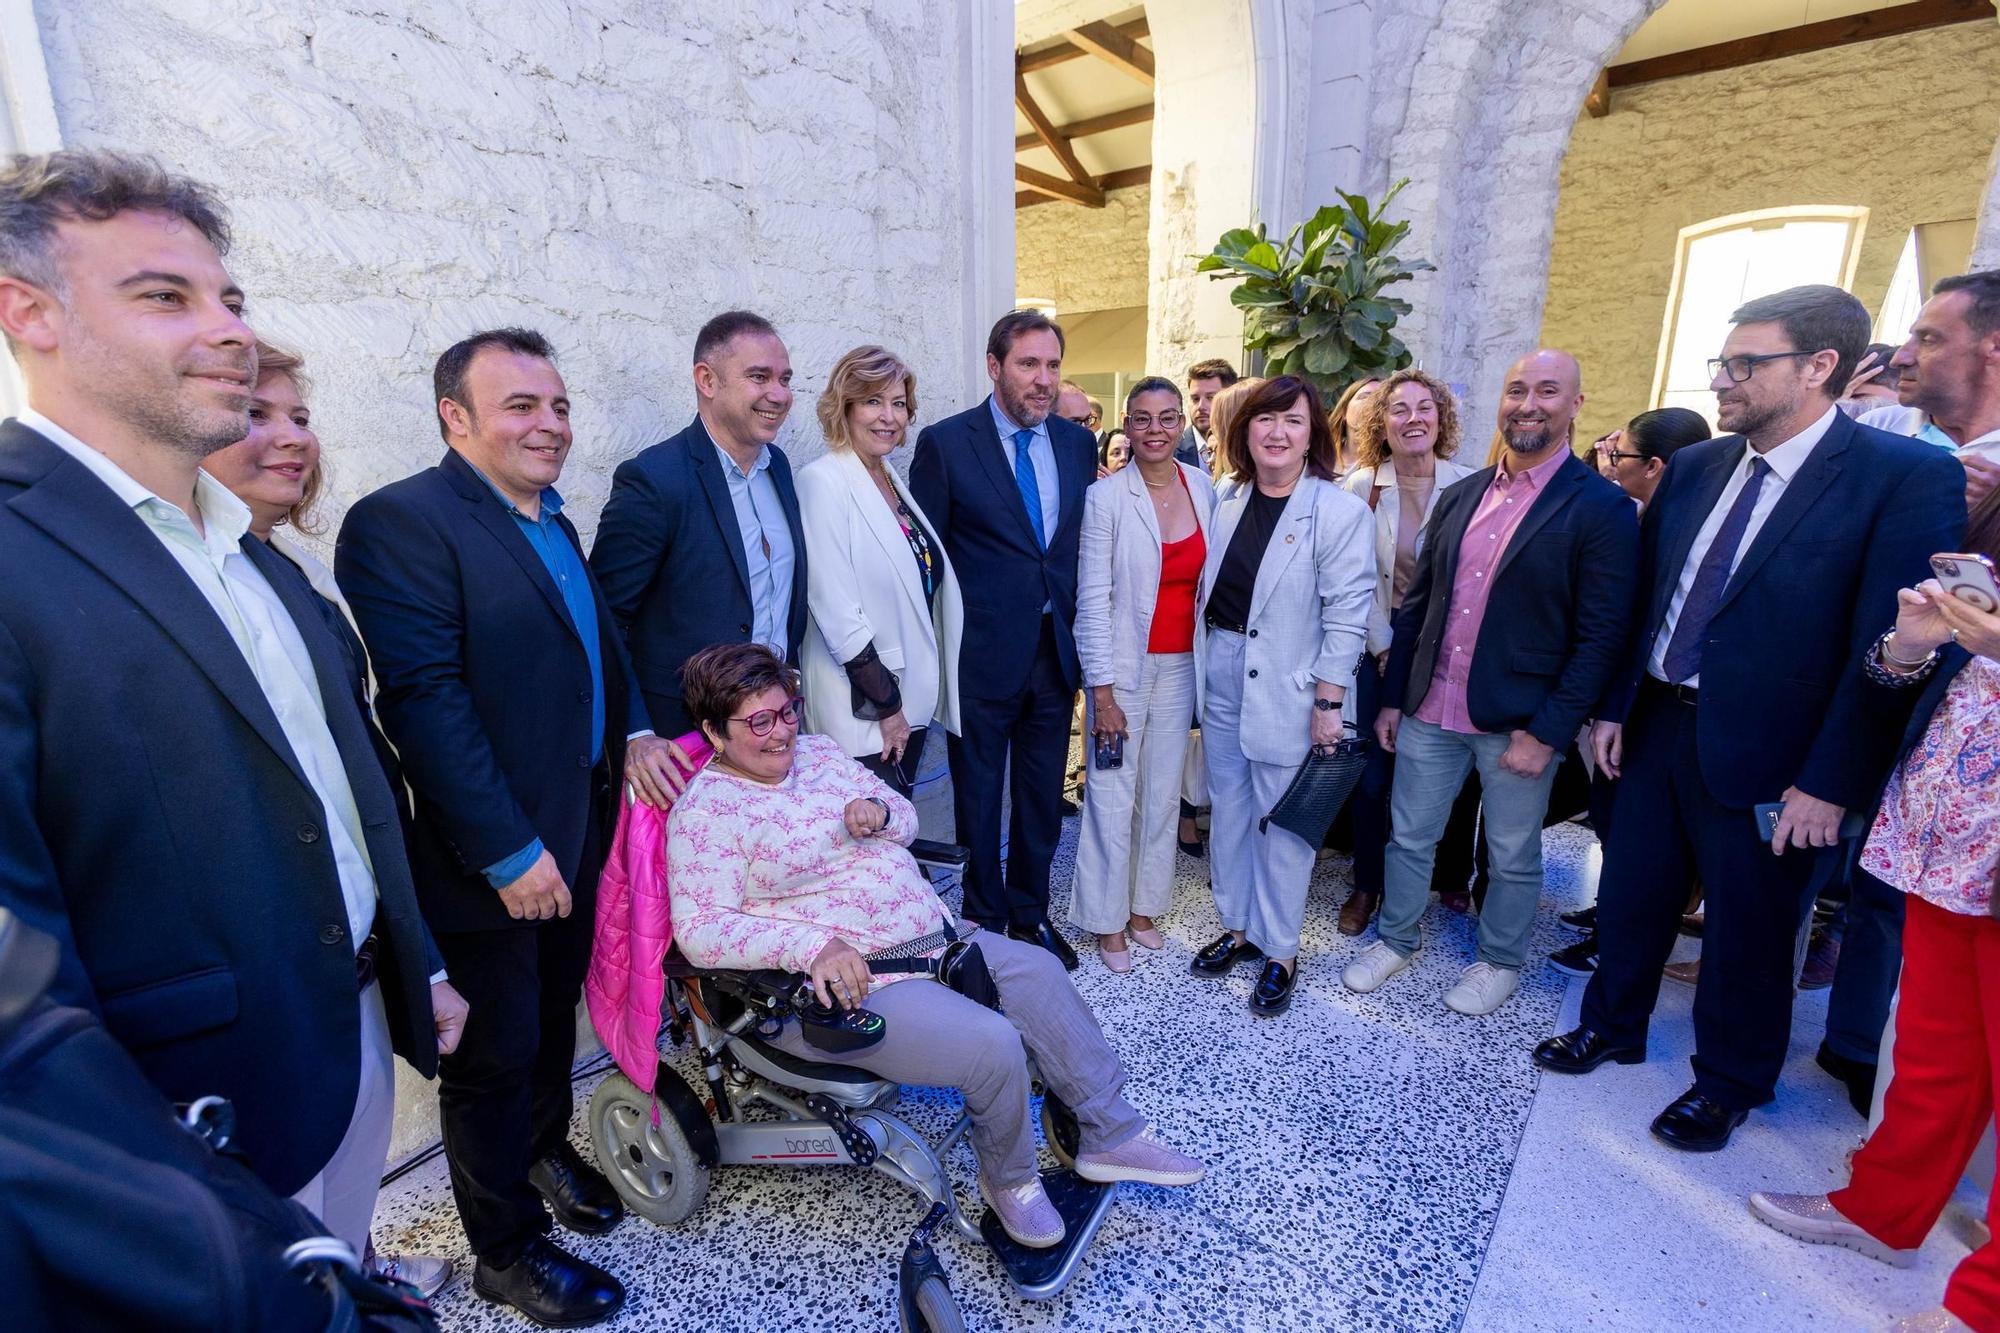 El ministro Óscar Puente en el Foro Alicante de Información celebrado en Casa Mediterráneo